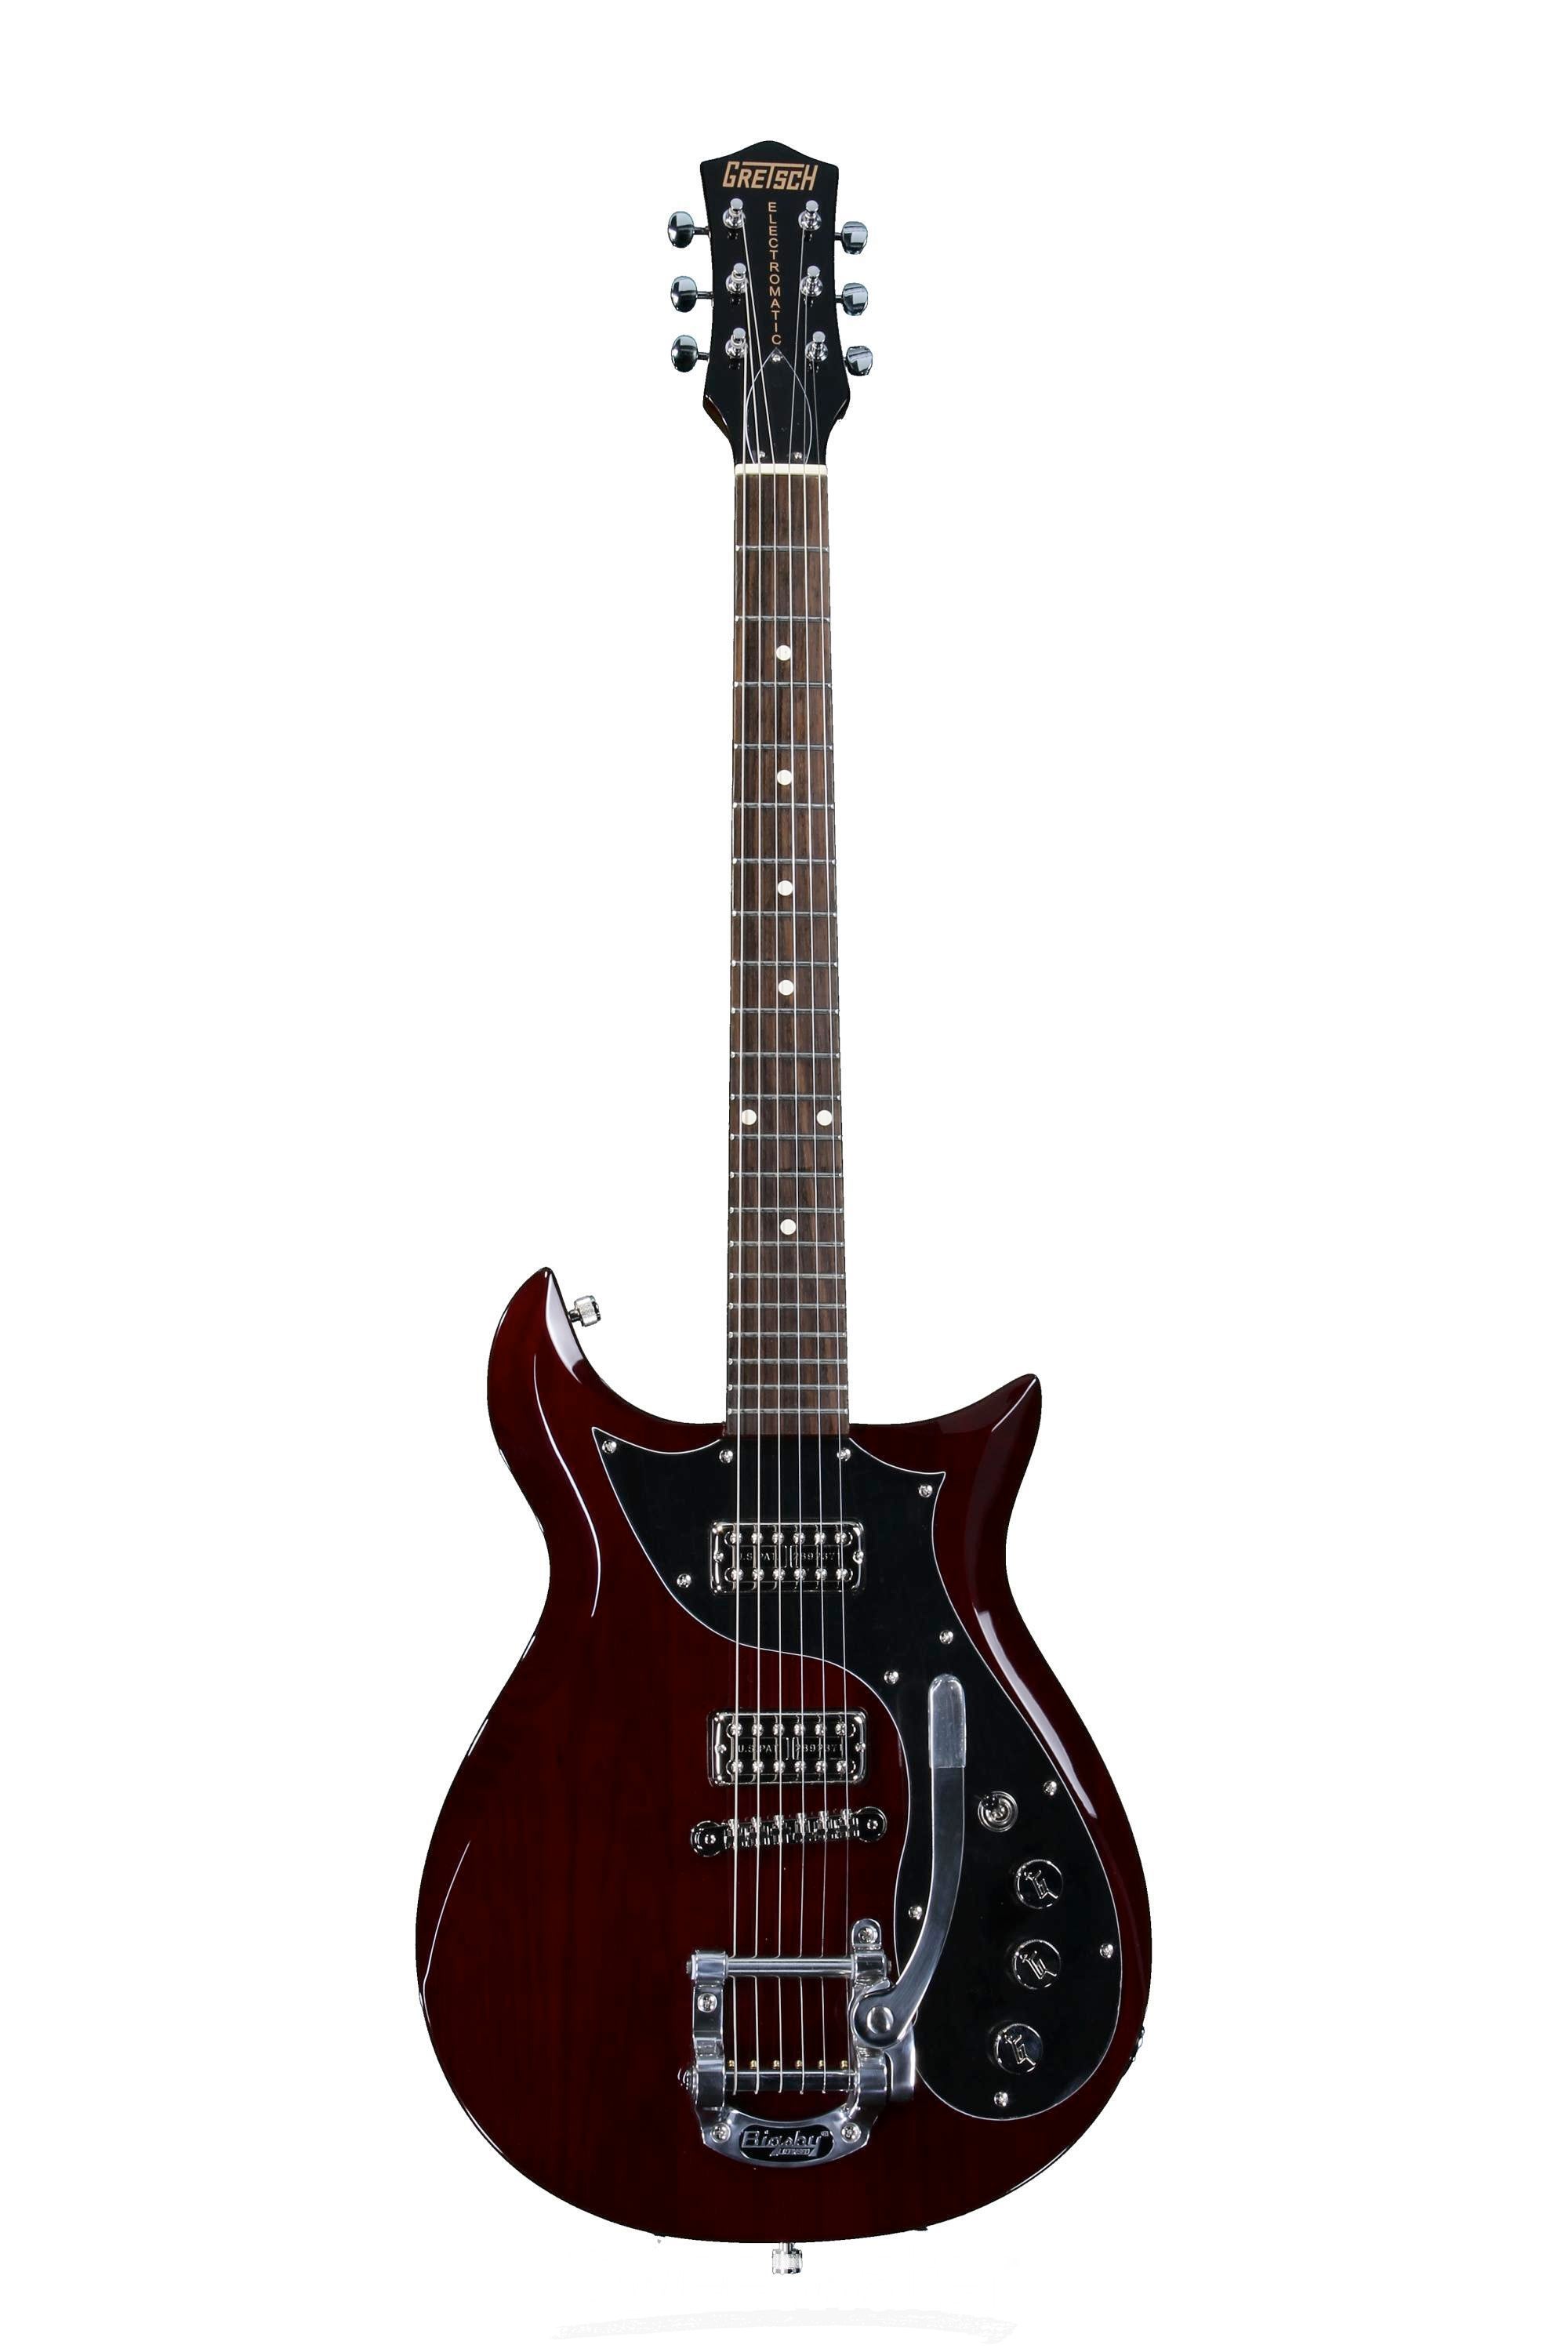 安い人気Gretsch [Electromatic G5135T] 中古 エレキギター u42141 グレッチ